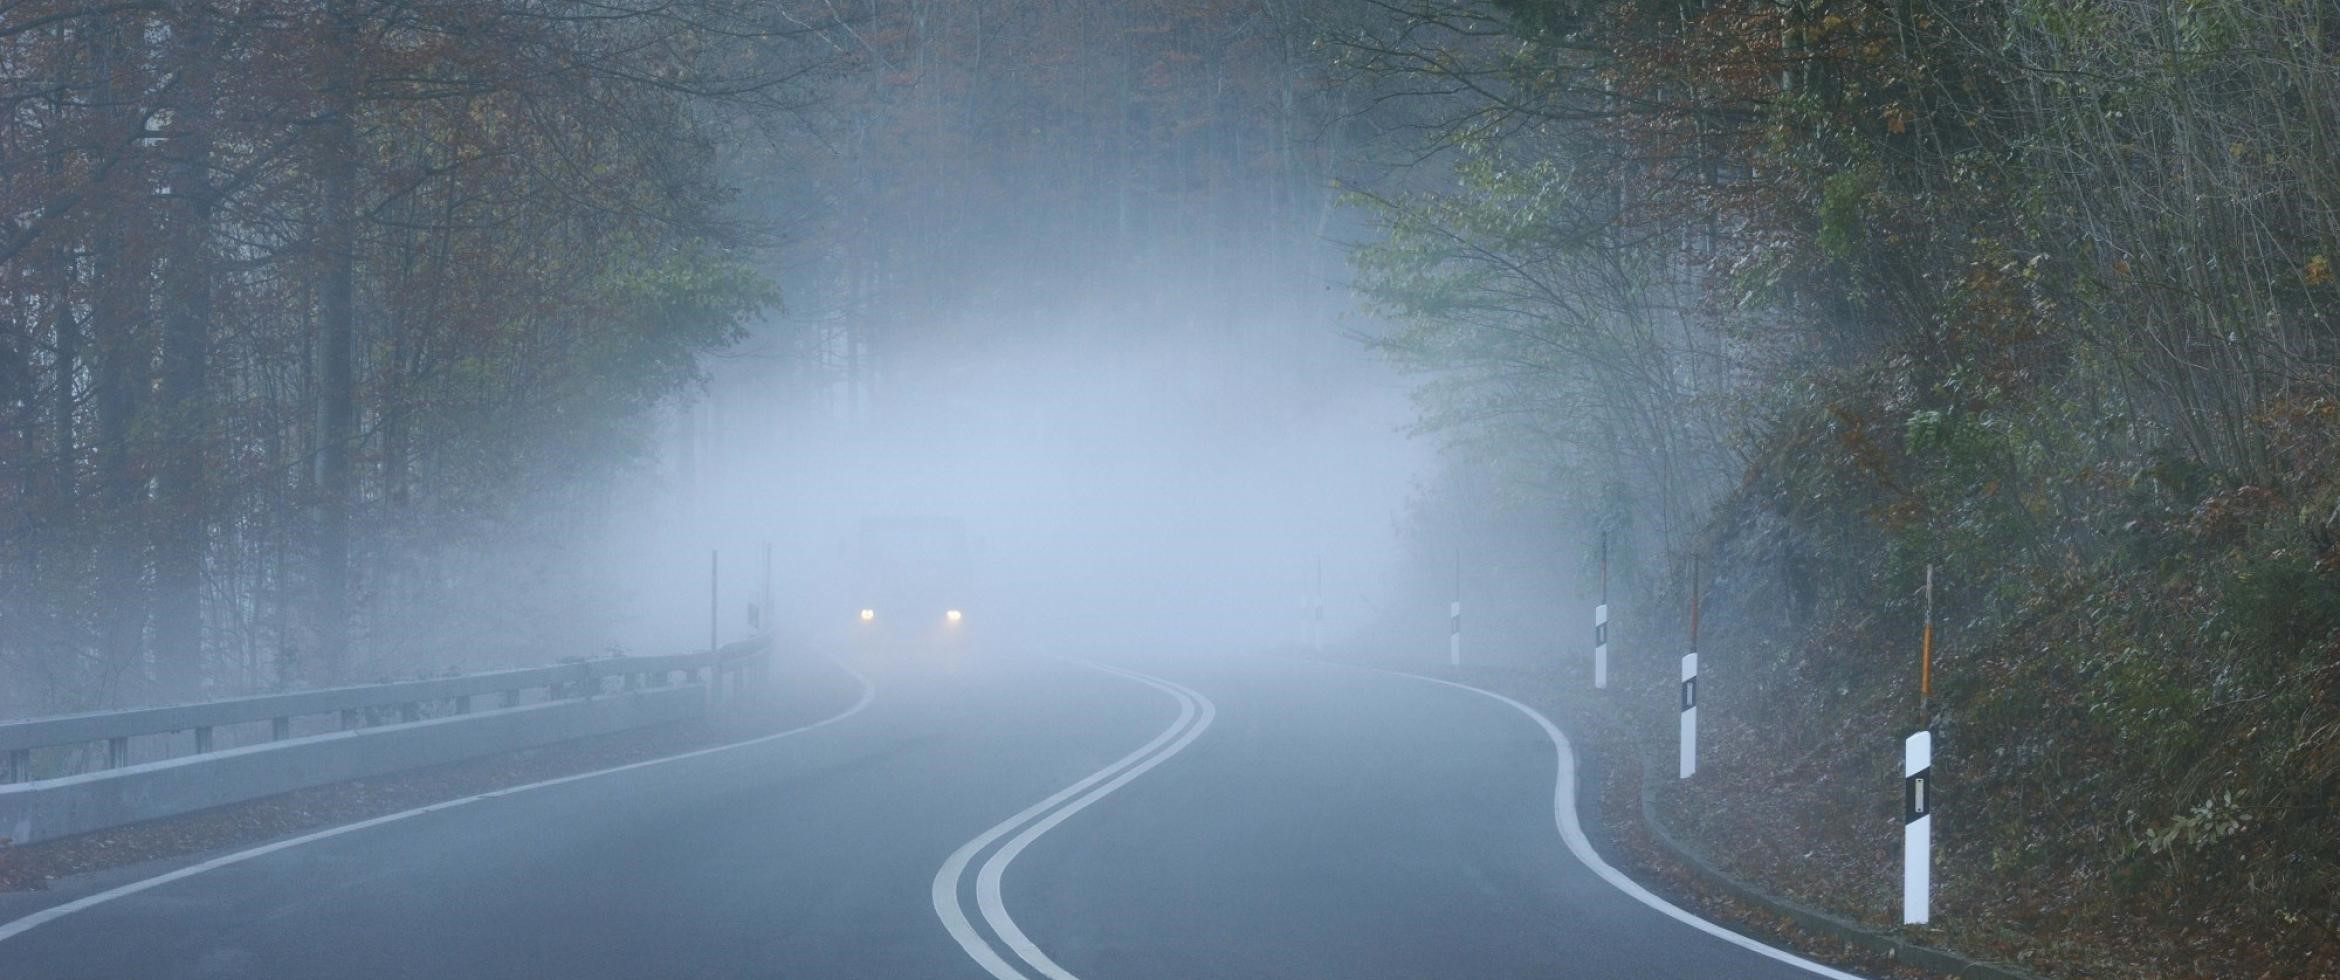 روشنایی جاده مه آلود